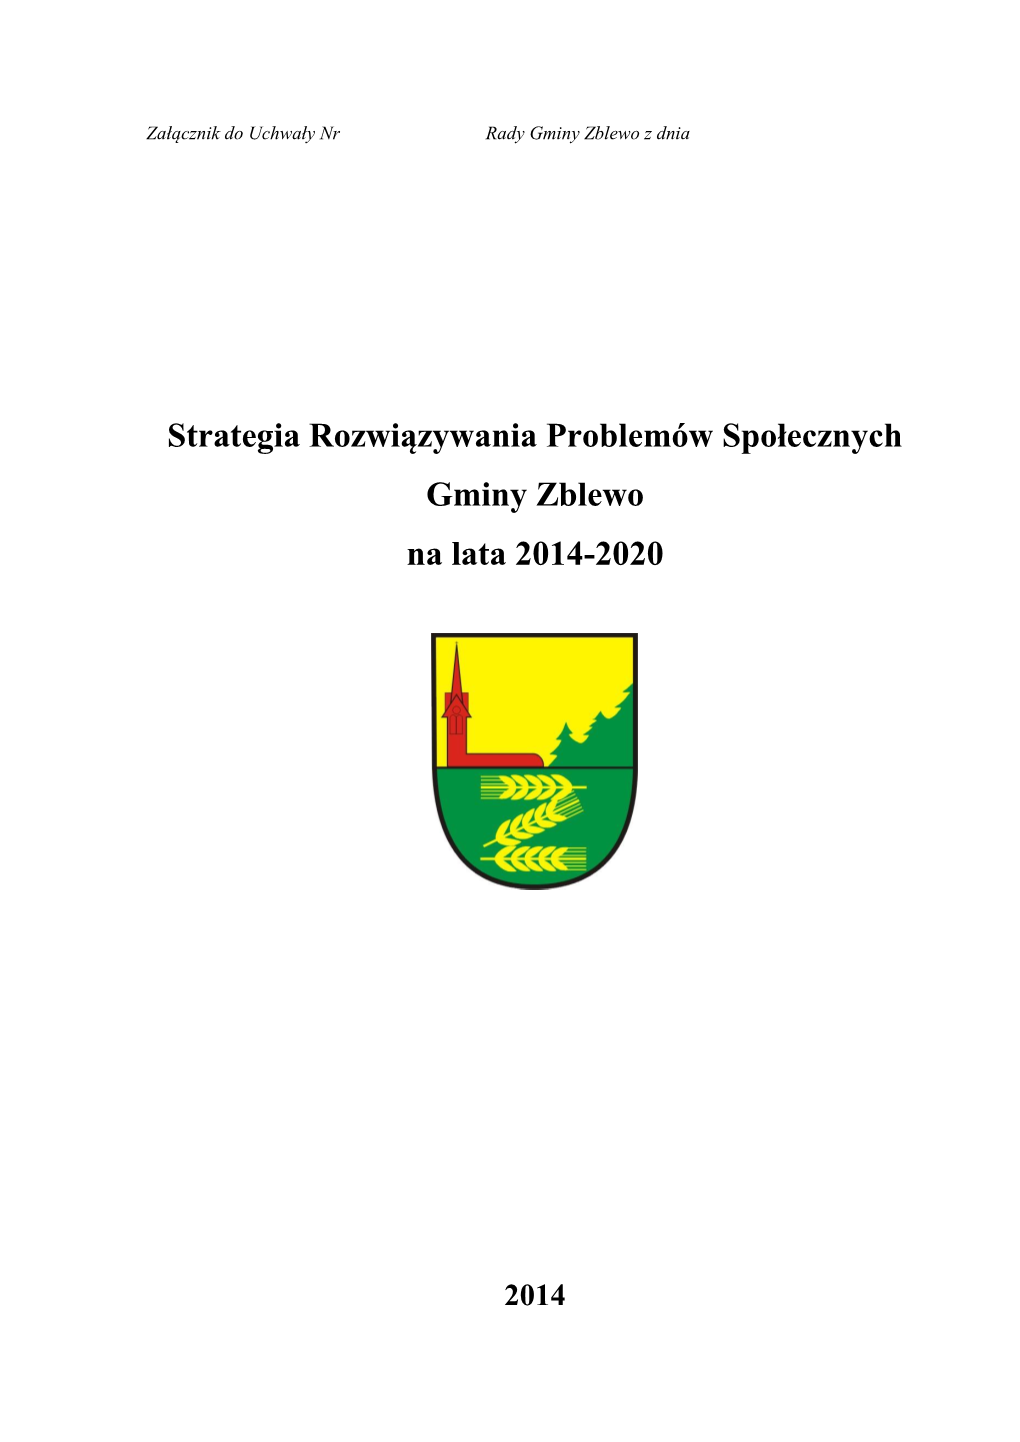 Strategia Rozwiązywania Problemów Społecznych Gminy Zblewo Na Lata 2014-2020